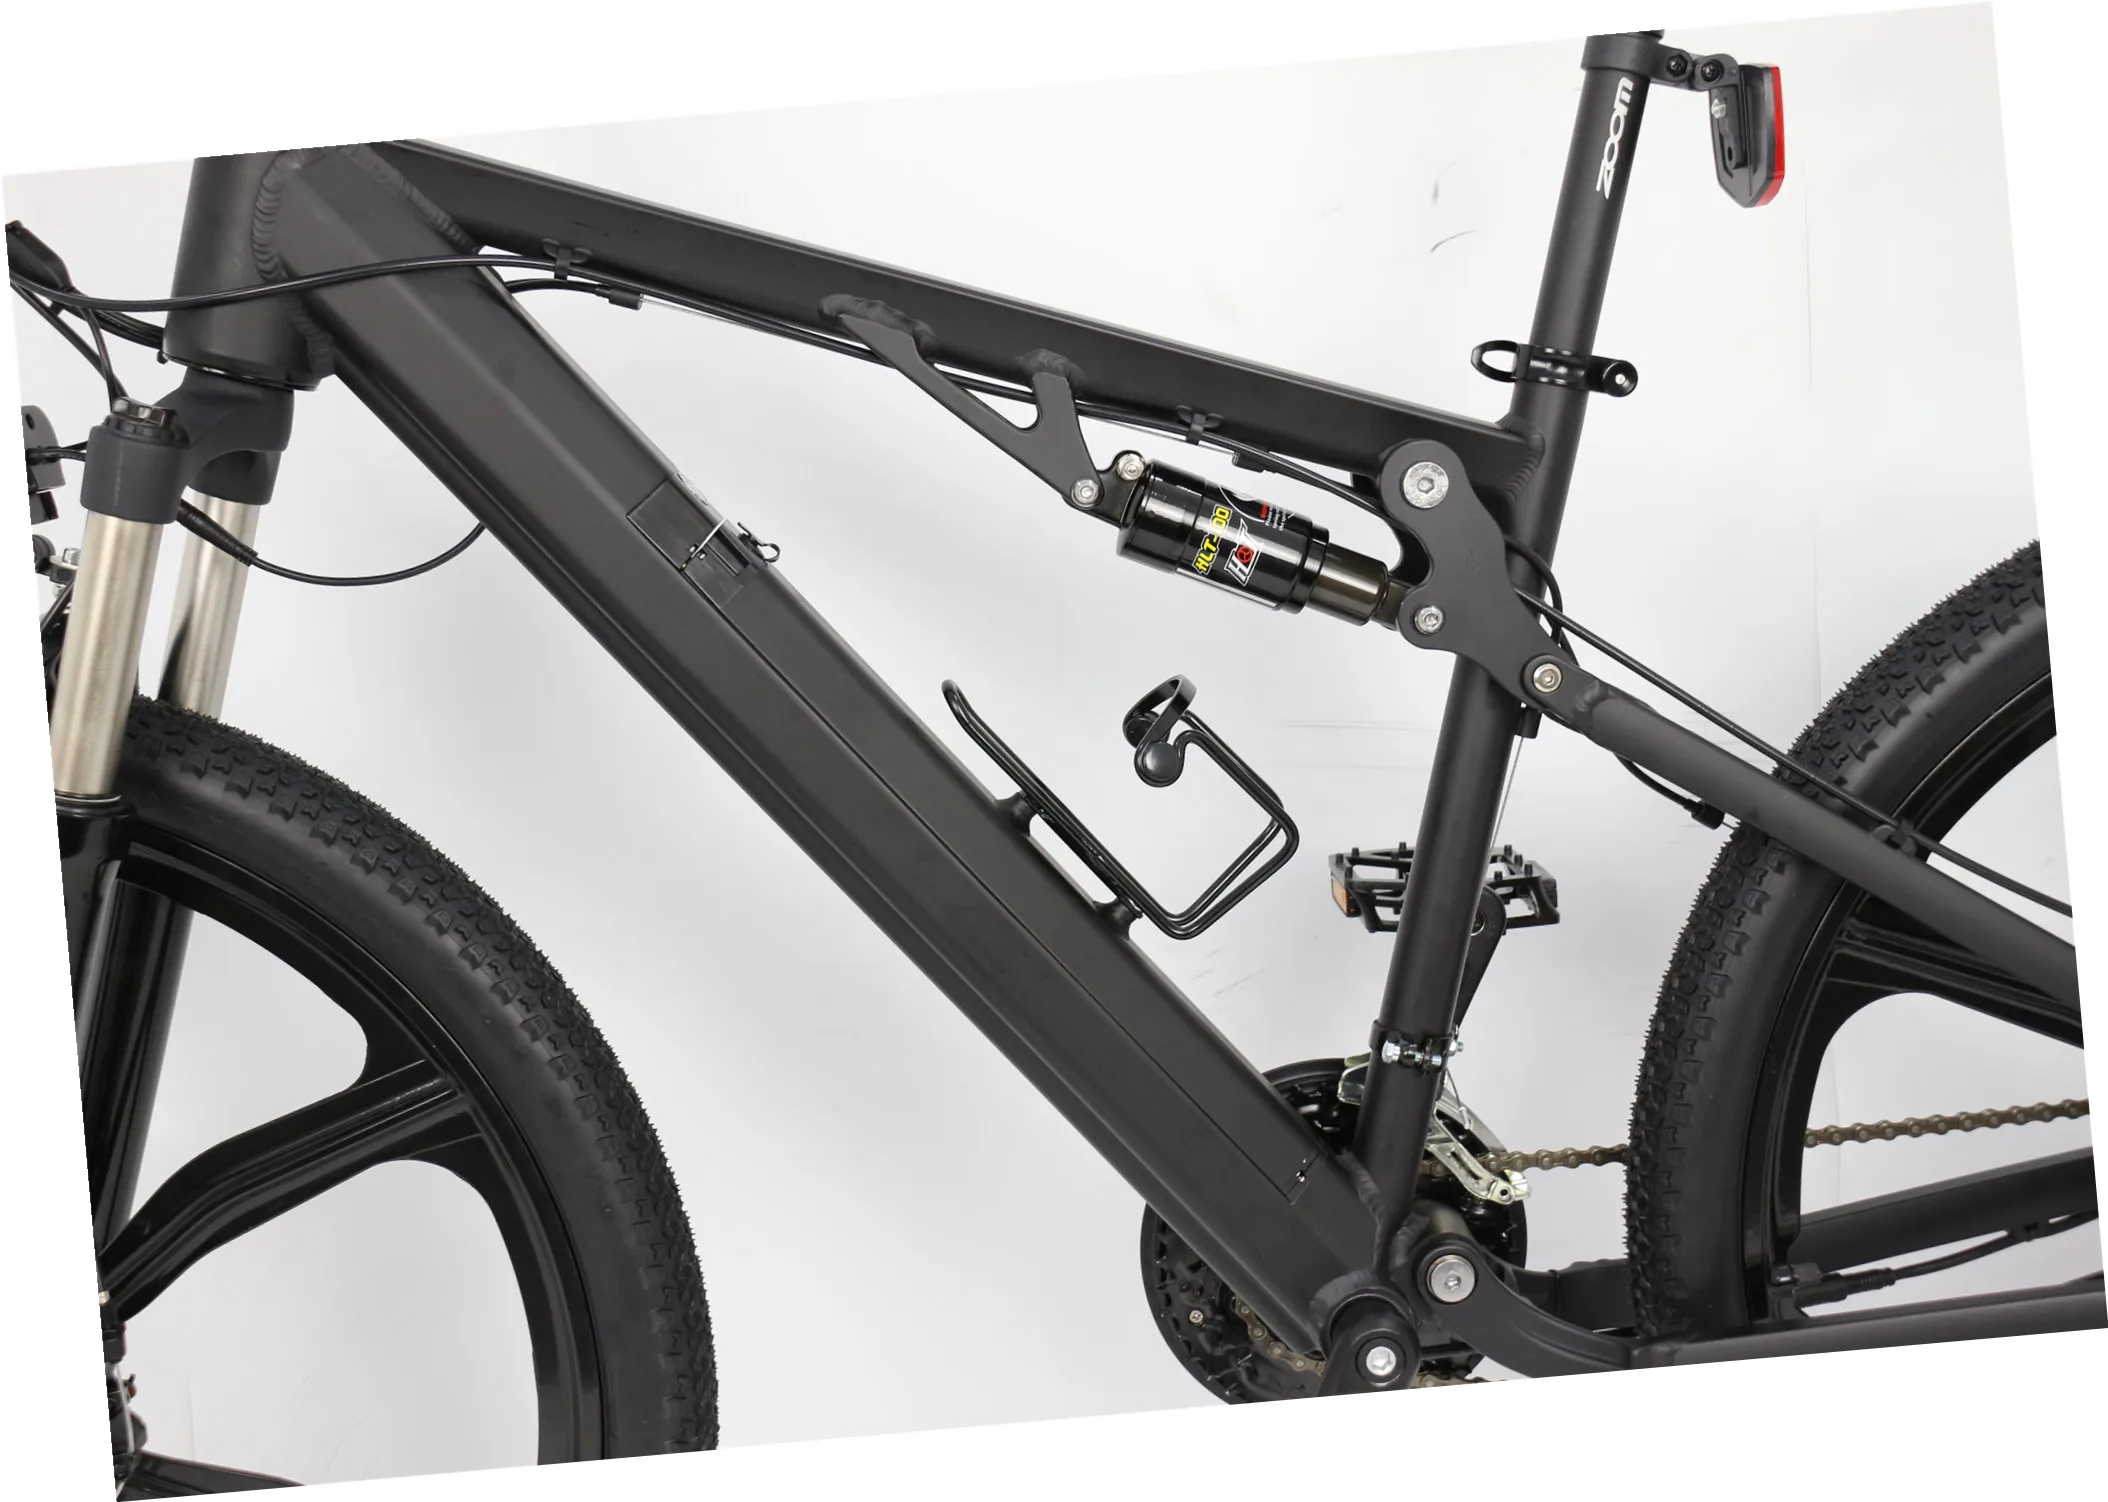 EU USA warehouse Drop shipping 750W 1000W Fat tire off road Electric bike Mountain for Adult - Mountain ebike - 3